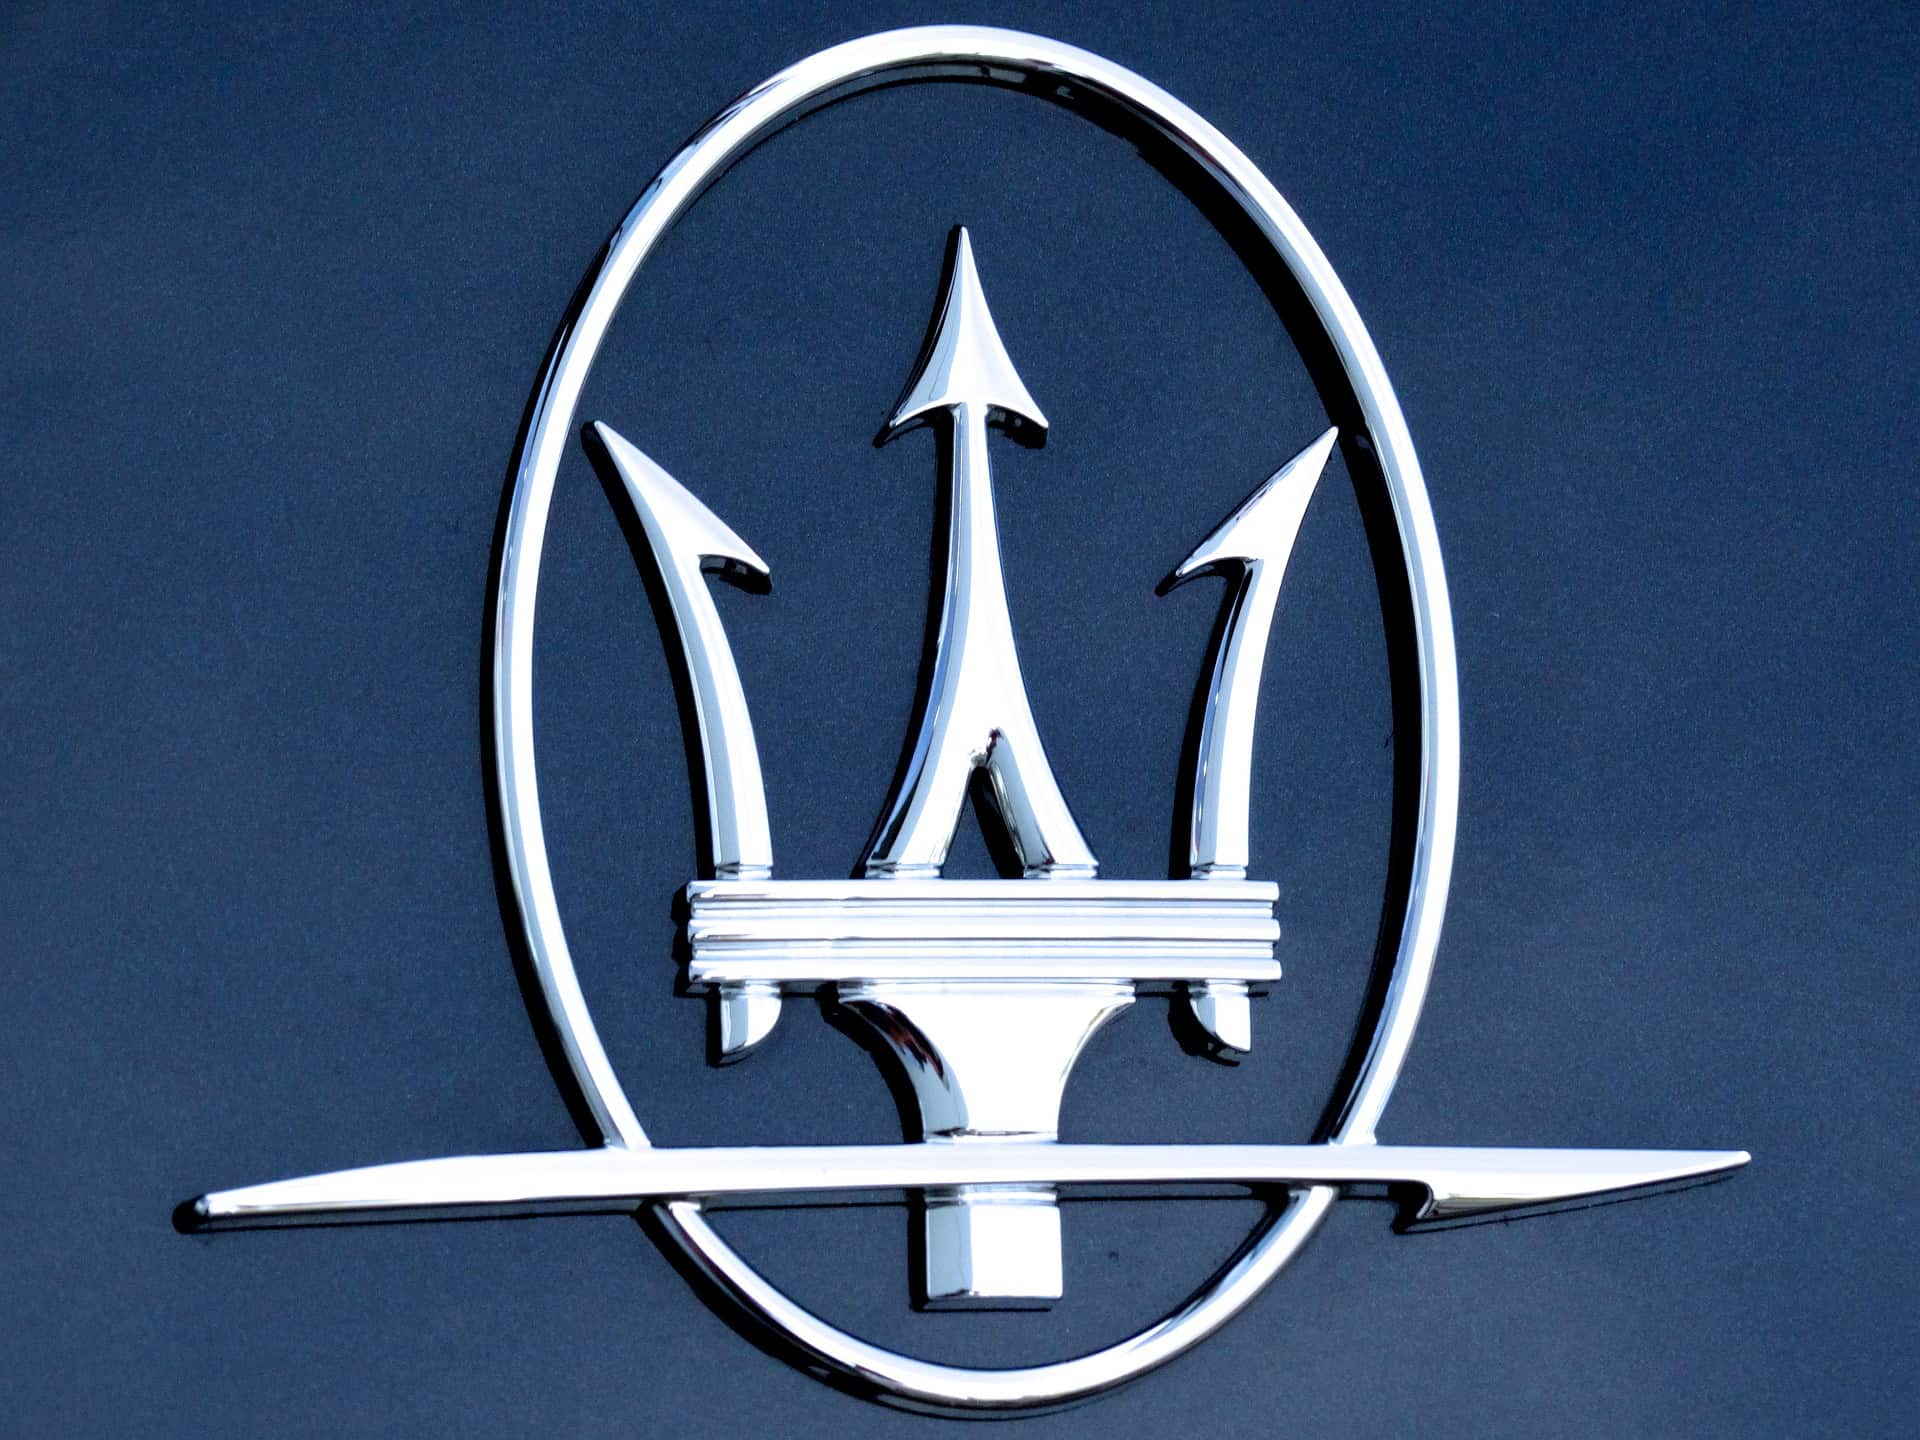 Un modello di recente introduzione per il noleggio a lungo termine è la Maserati Grecale, un’auto di lusso. Info su come noleggiarla.